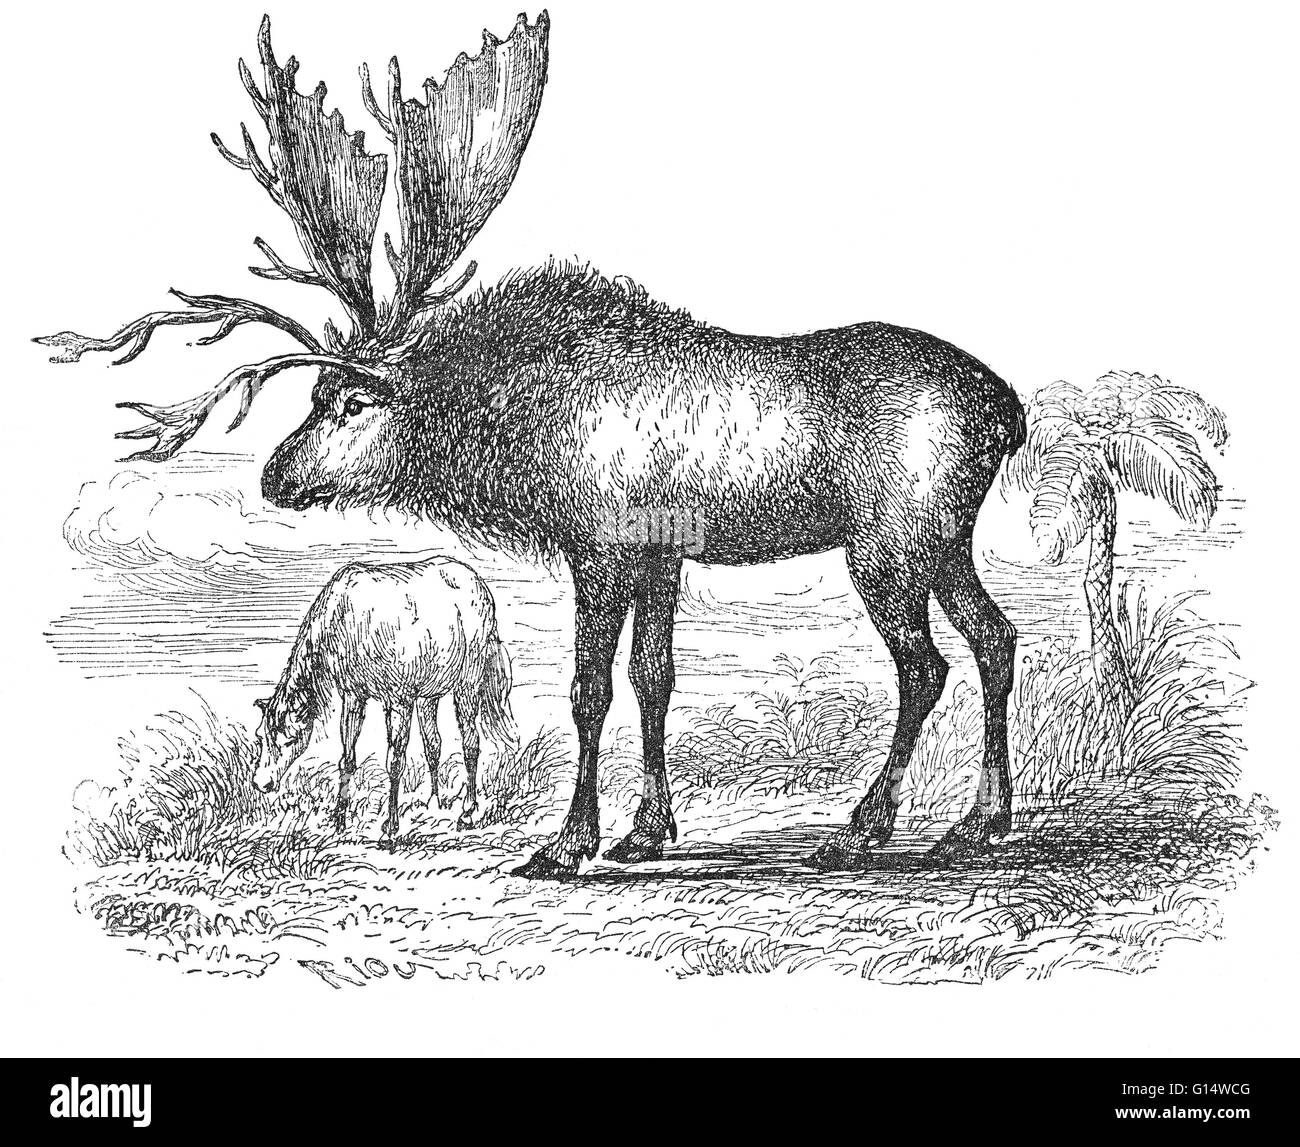 Sivatherium, ricostruita da solo un cranio fossile, da Louis Figuier il mondo prima del diluvio, 1867 edizione americana. Una volta si pensava che fosse un gigantesco cervi, ora è raggruppato con le giraffe ed è noto che somigliava odierno okapi. Sivatheri Foto Stock